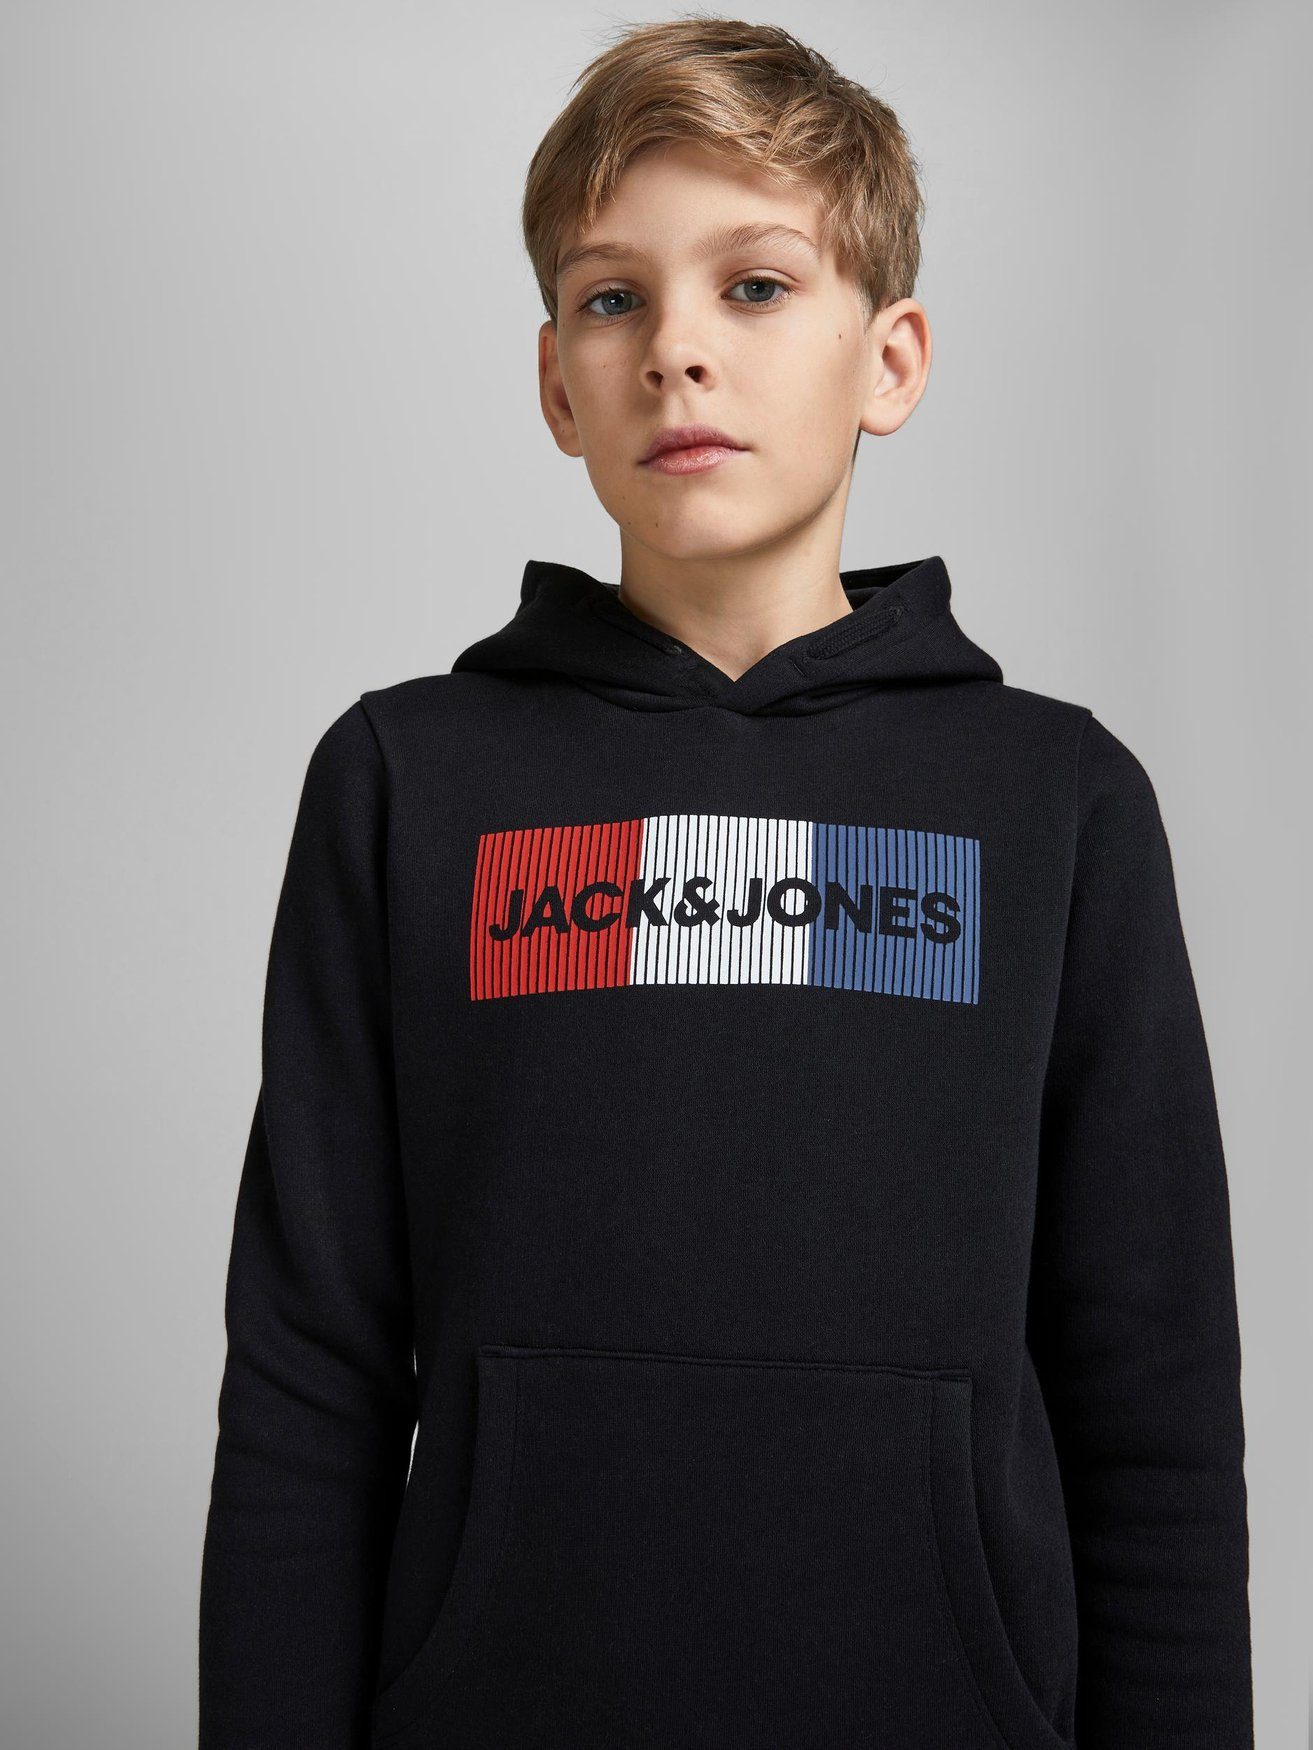 Jack & Jones Logo Pullover 6502 Kapuzen Sweater Hoodie in JJECORP Schwarz Hoodie